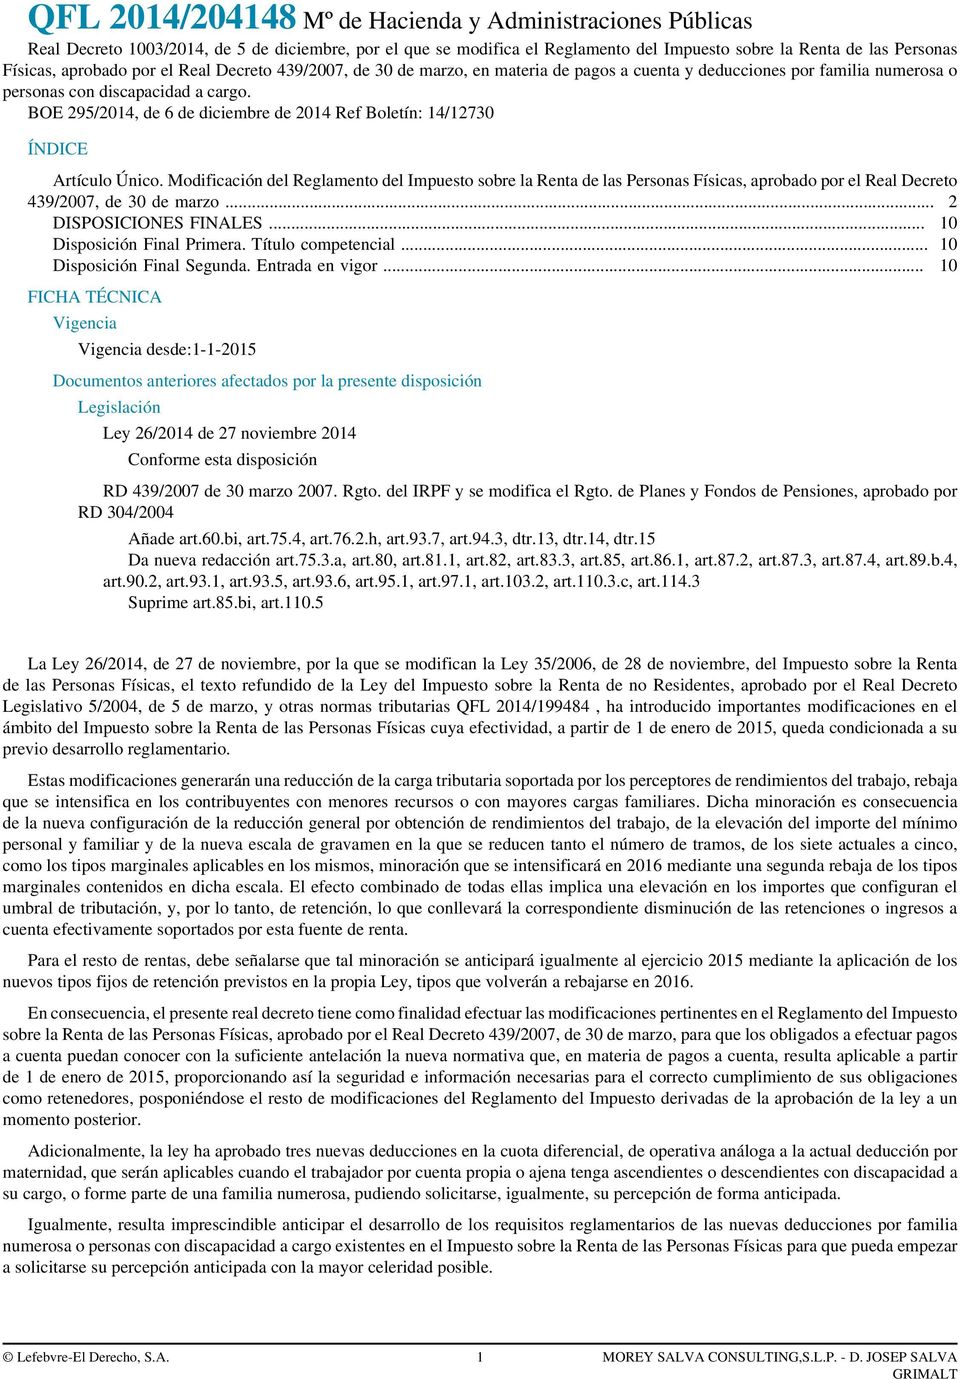 BOE 295/2014, de 6 de diciembre de 2014 Ref Boletín: 14/12730 ÍNDICE Artículo Único.